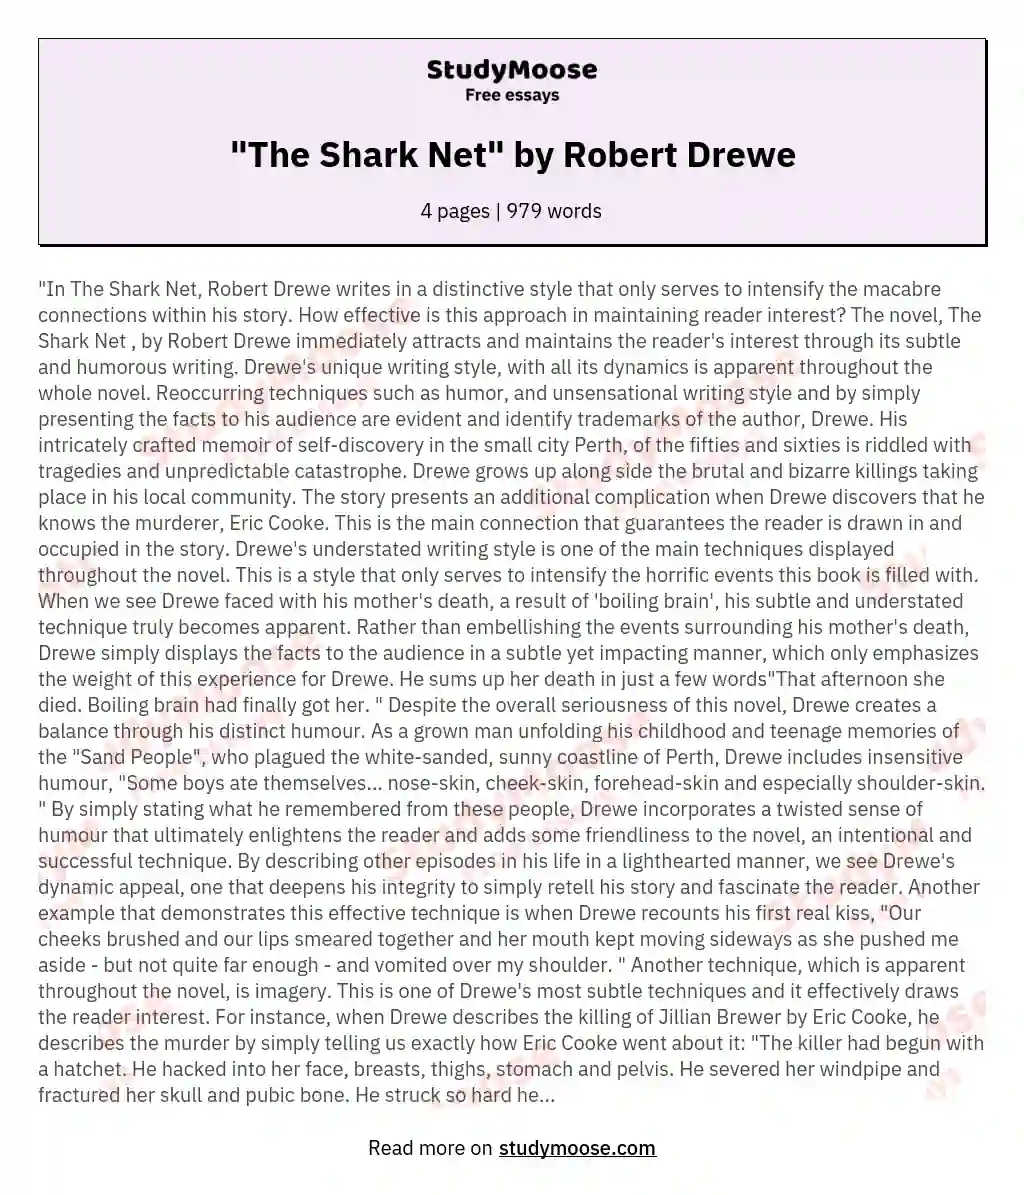 "The Shark Net" by Robert Drewe essay